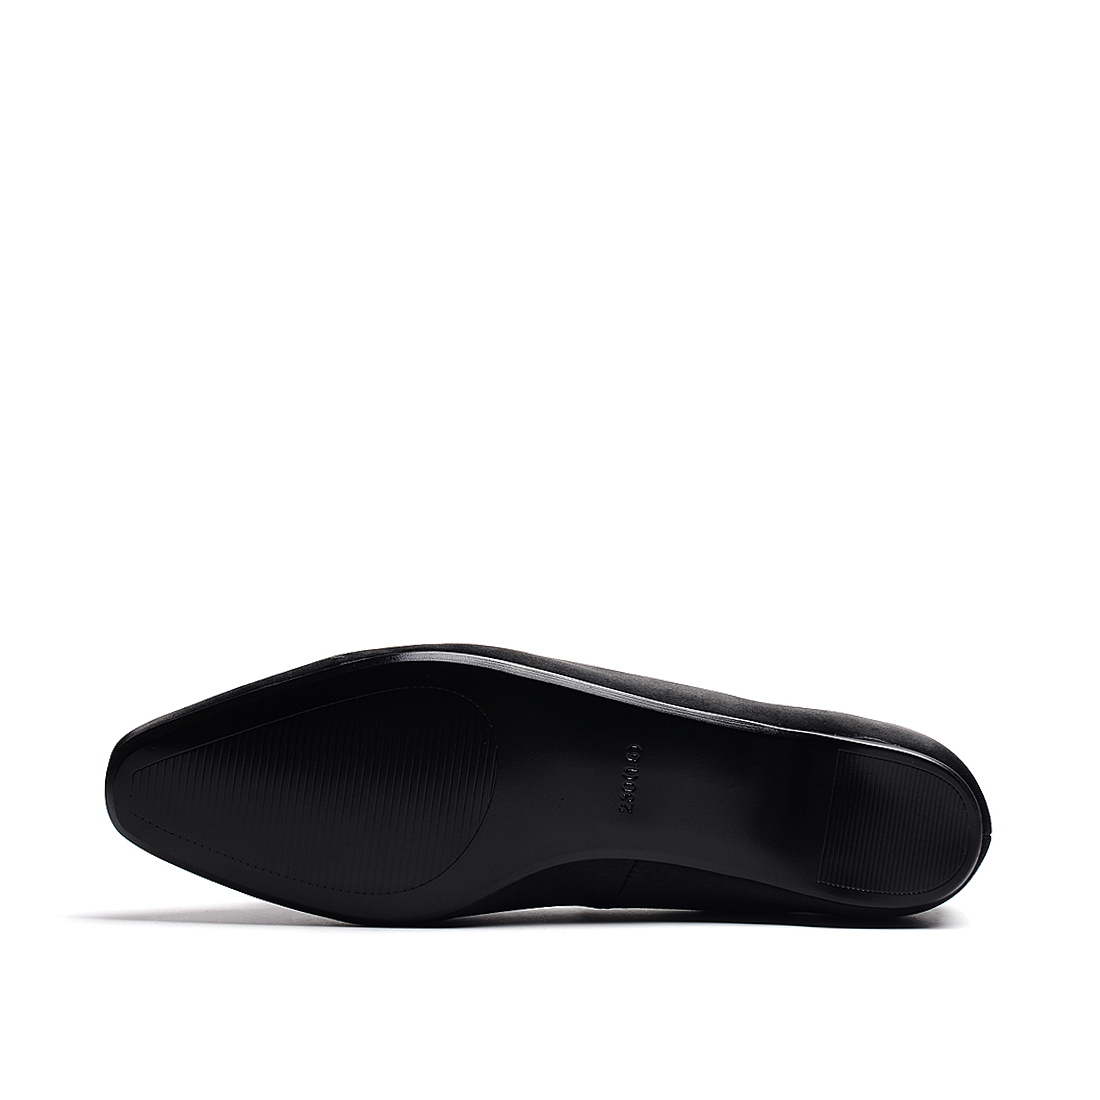 [Fovilla]欧美风水钻丝光缎面单鞋(尺码标准)
编号：A3813D1A17